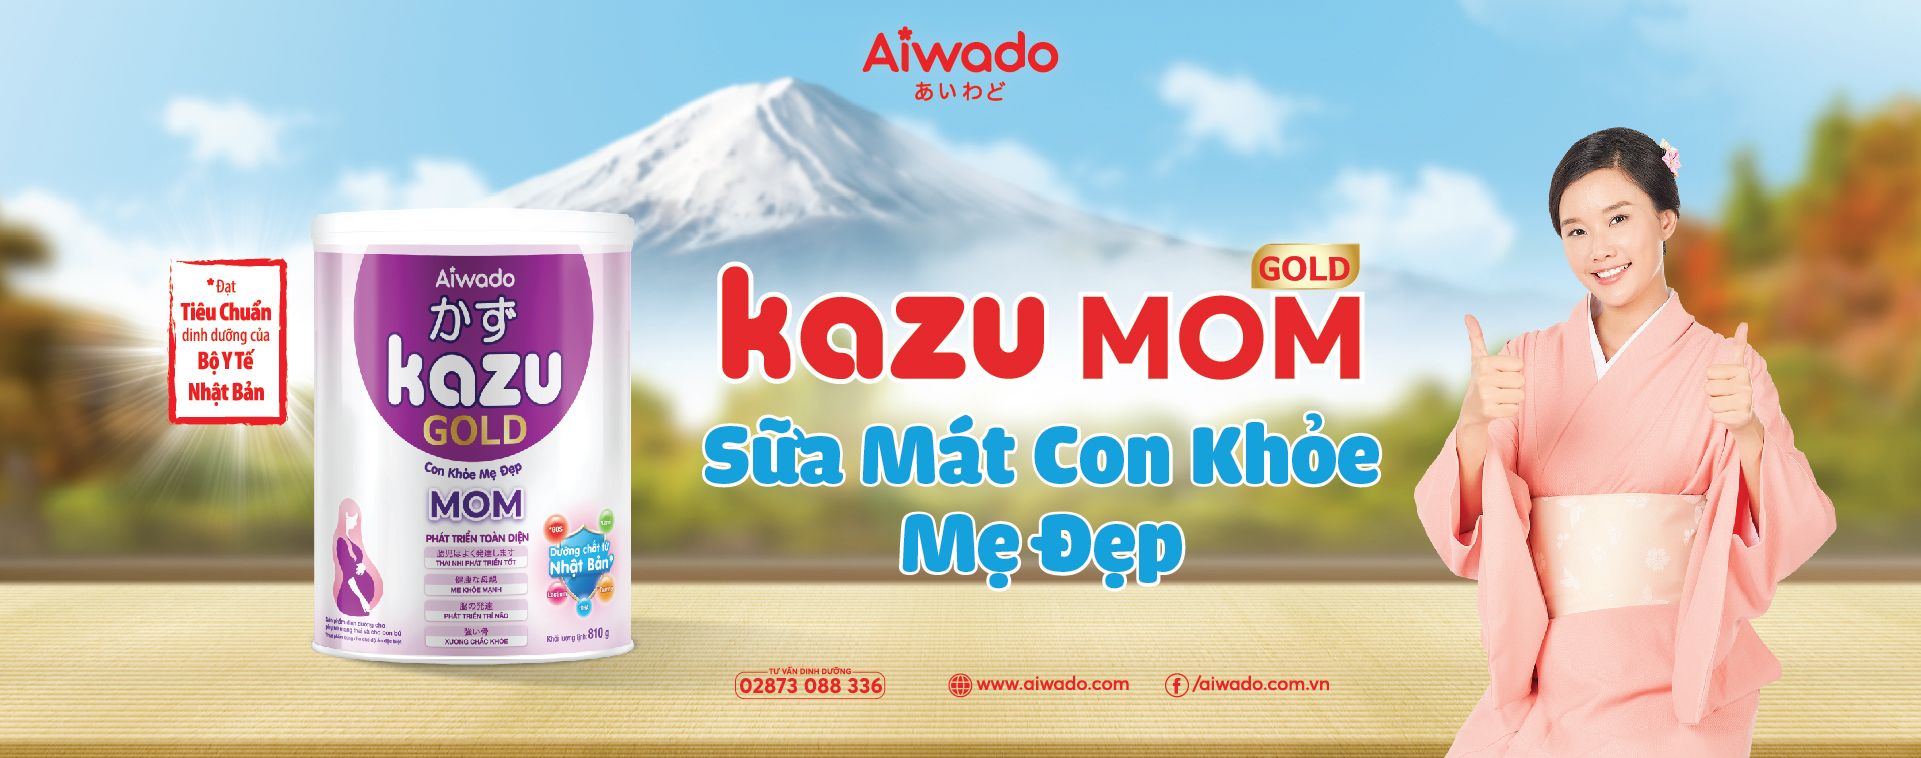 Kazu Mom Gold